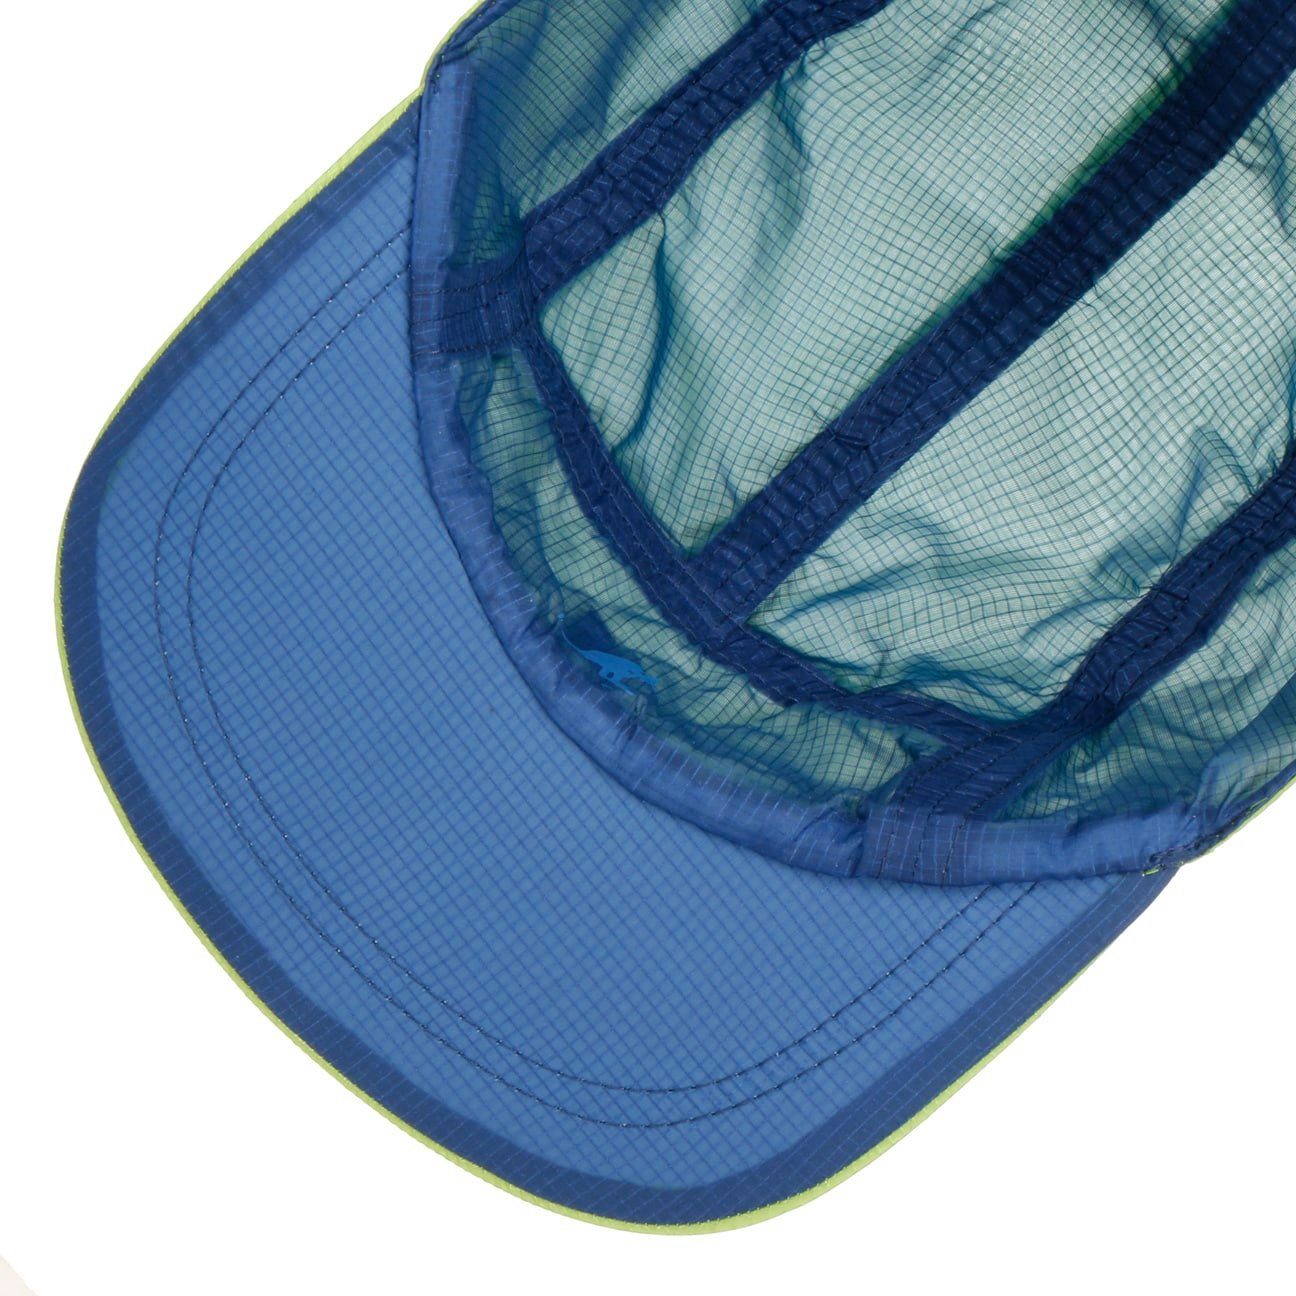 Kangol Cap Baseball Schirm (1-St) grün Basecap mit